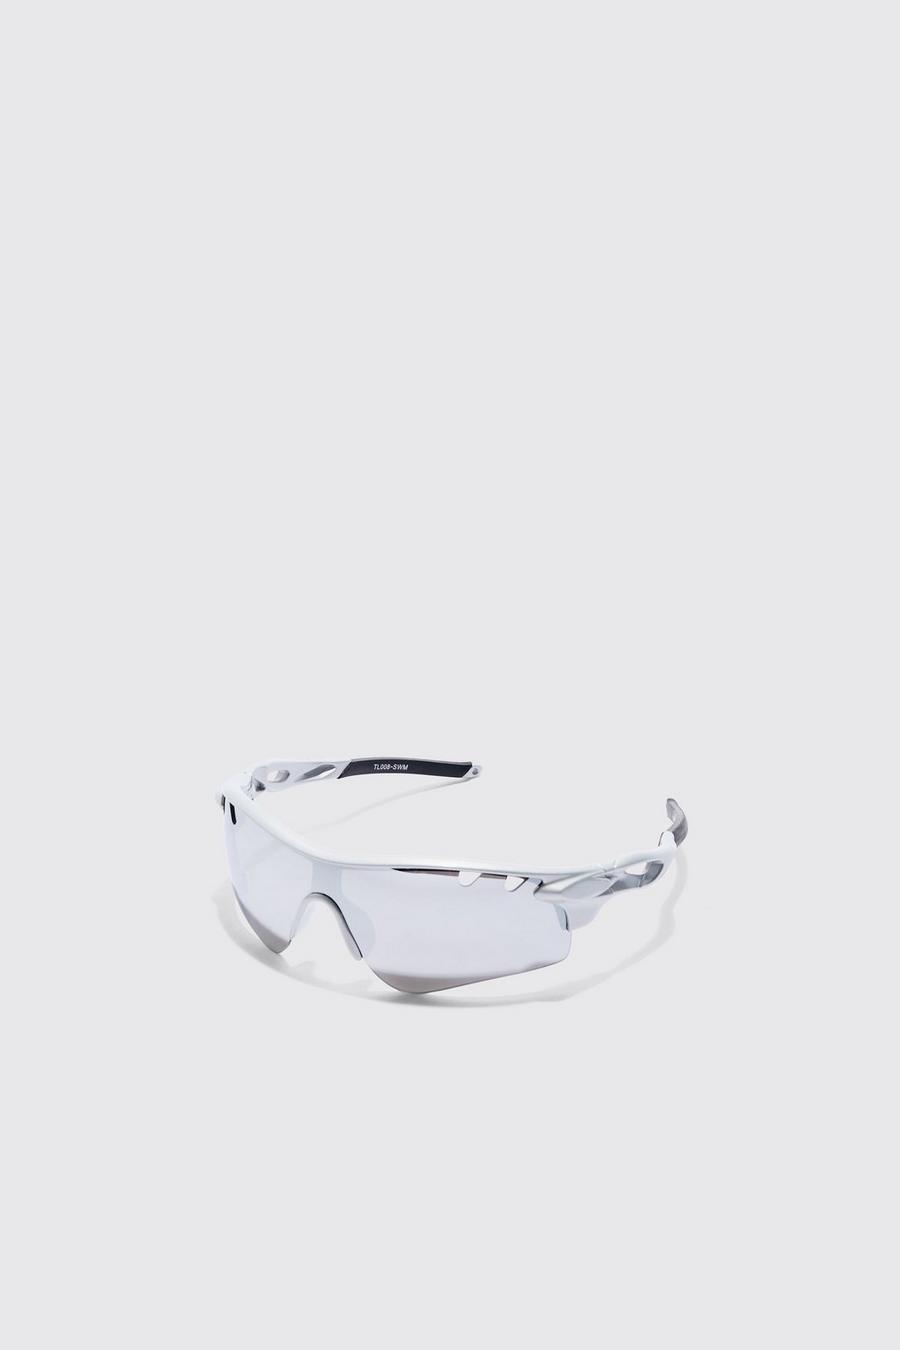 Silver Chrome Lens Angled Sunglasses